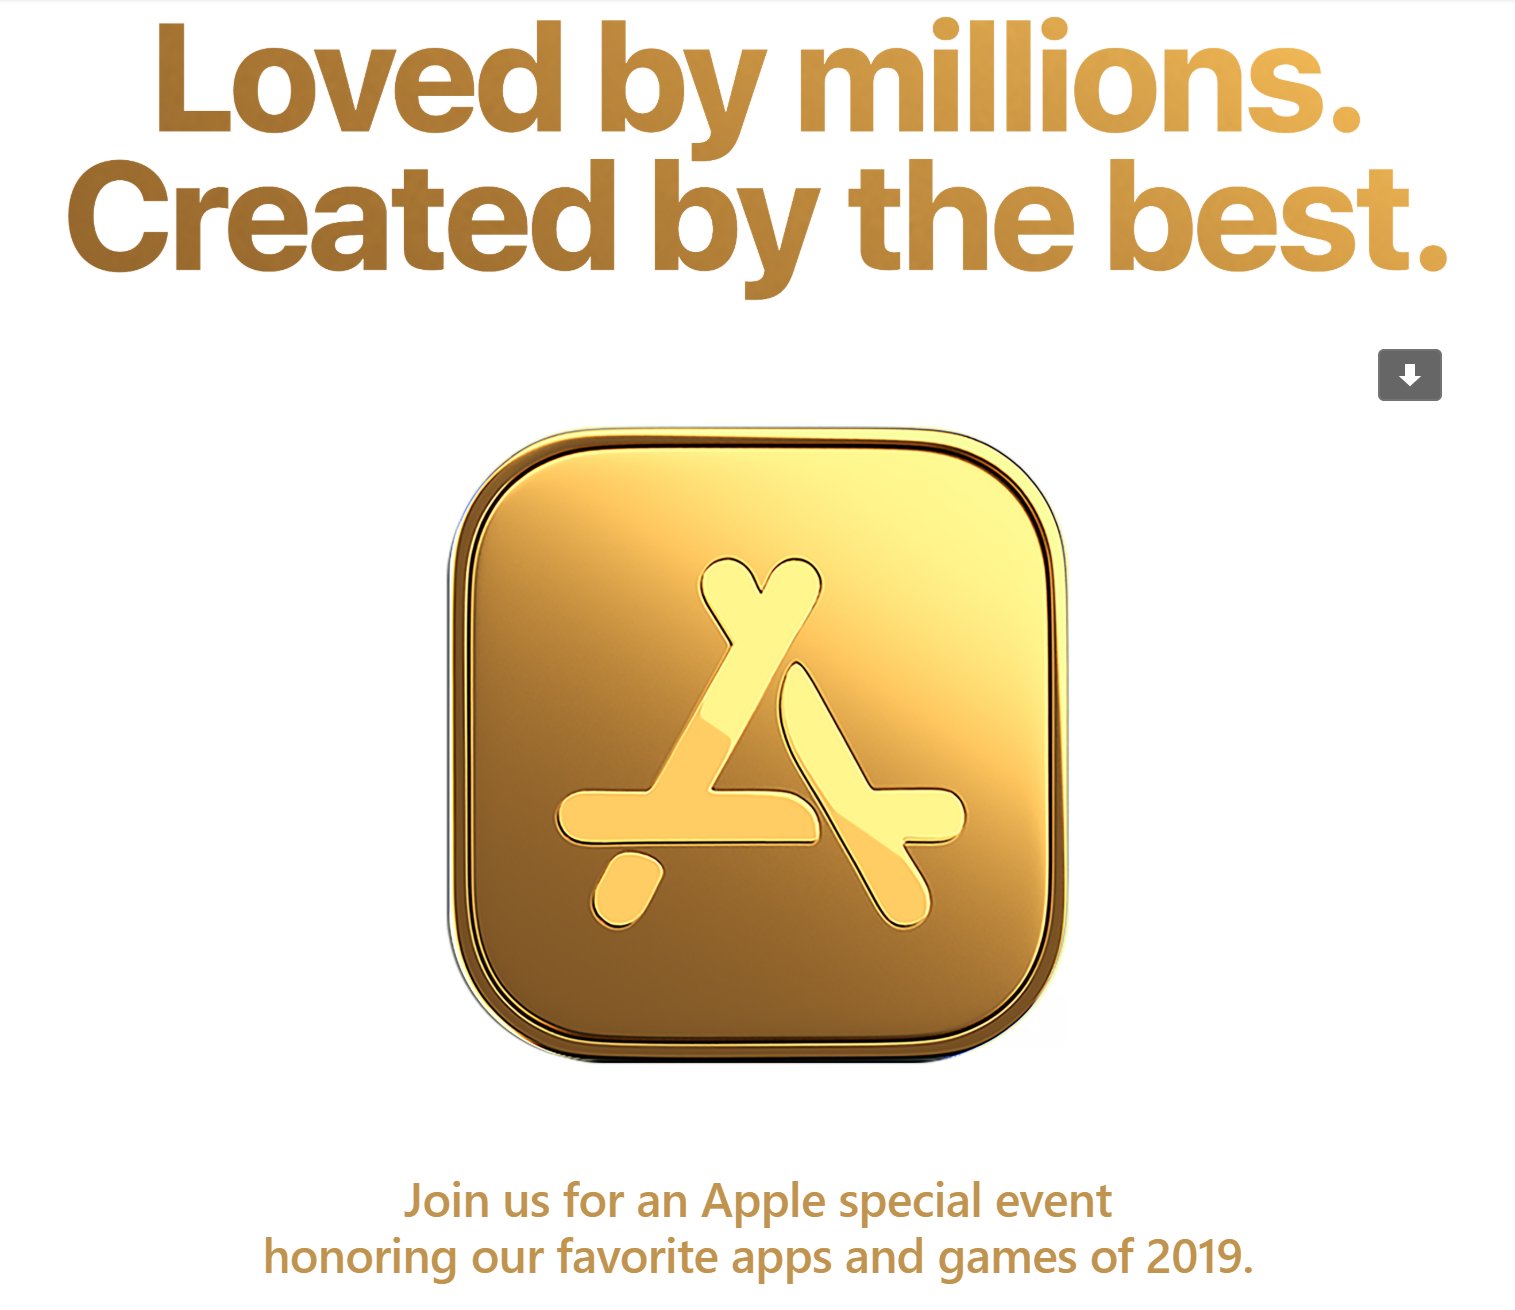 В начале декабря Apple назовет лучшие игры и приложения App Store за 2019 год